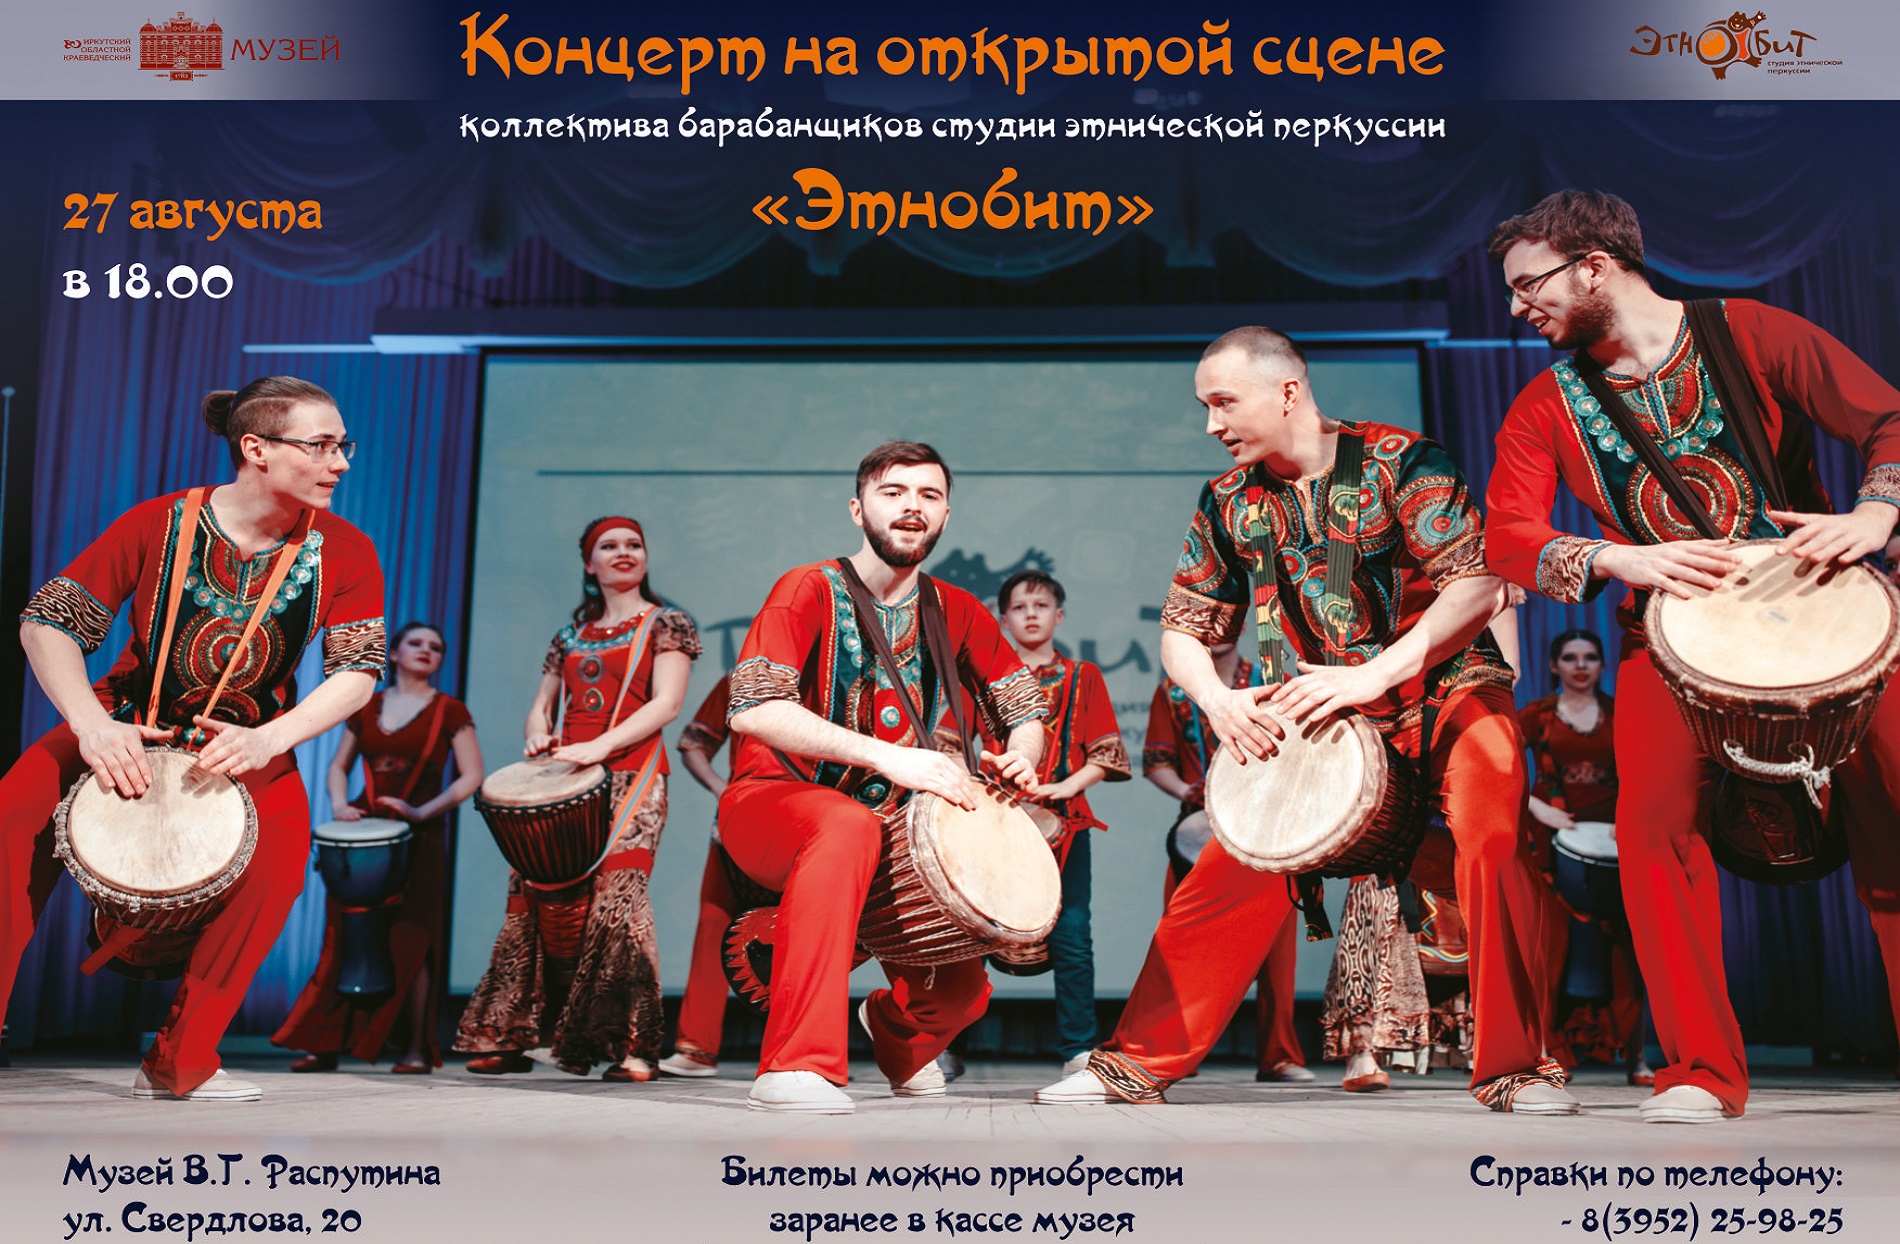 В Музее В.Г. Распутина состоится концерт коллектива барабанщиков студии этнической перкуссии «Этнобит» 